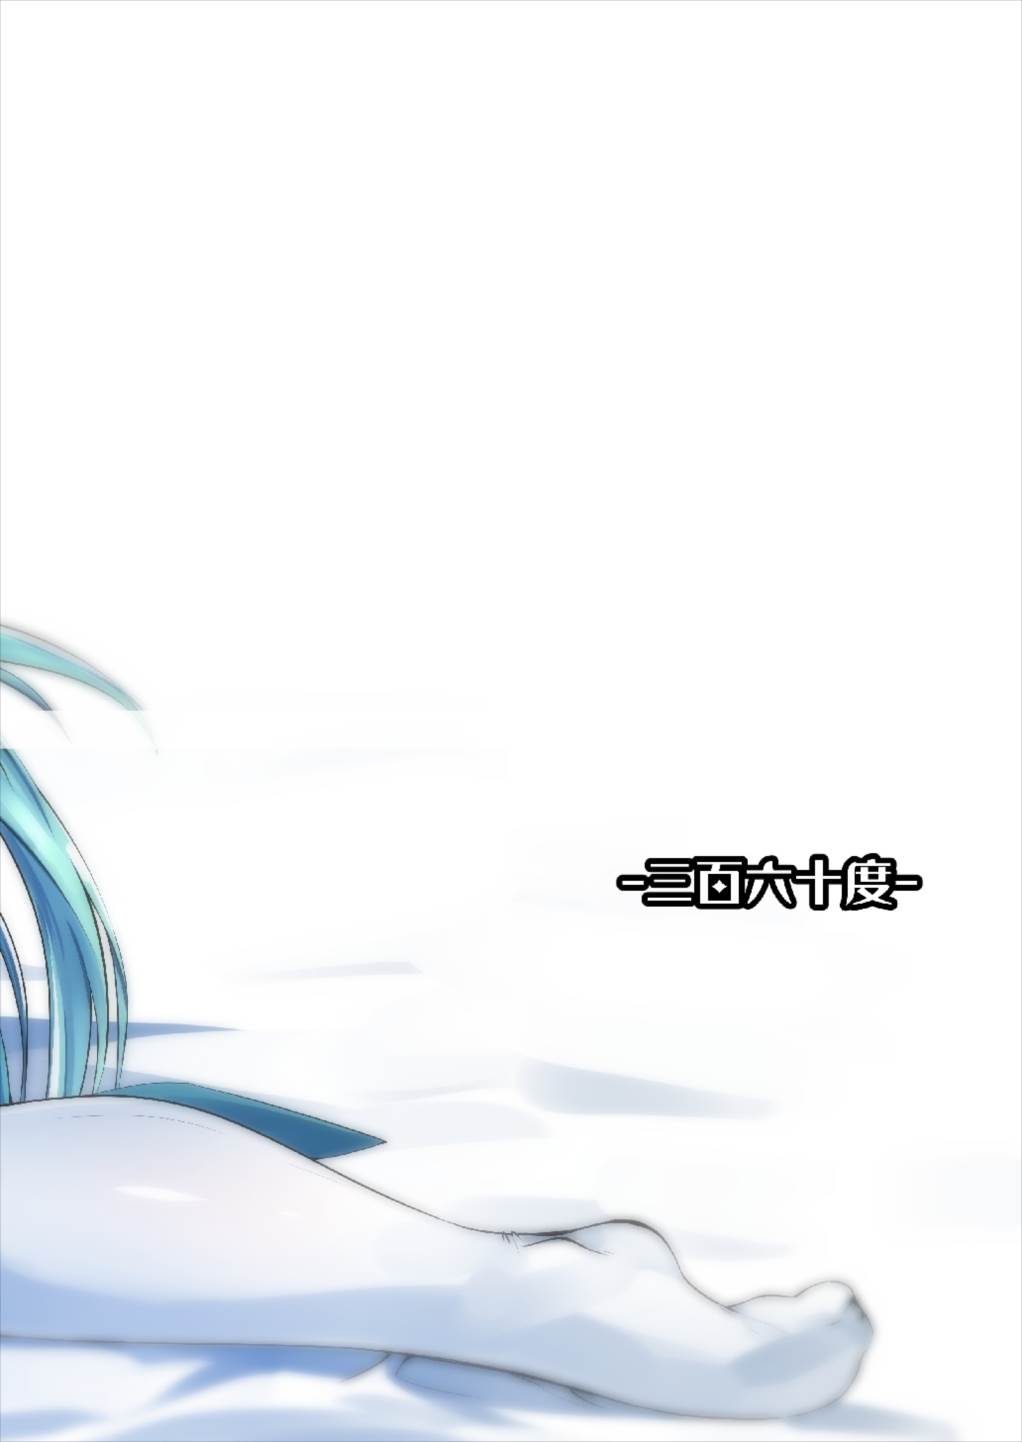 [-三百六十度- (白鷺六羽)] キヨヒメラバーズvol.01 清姫とはじめて (Fate/Grand Order) [DL版]